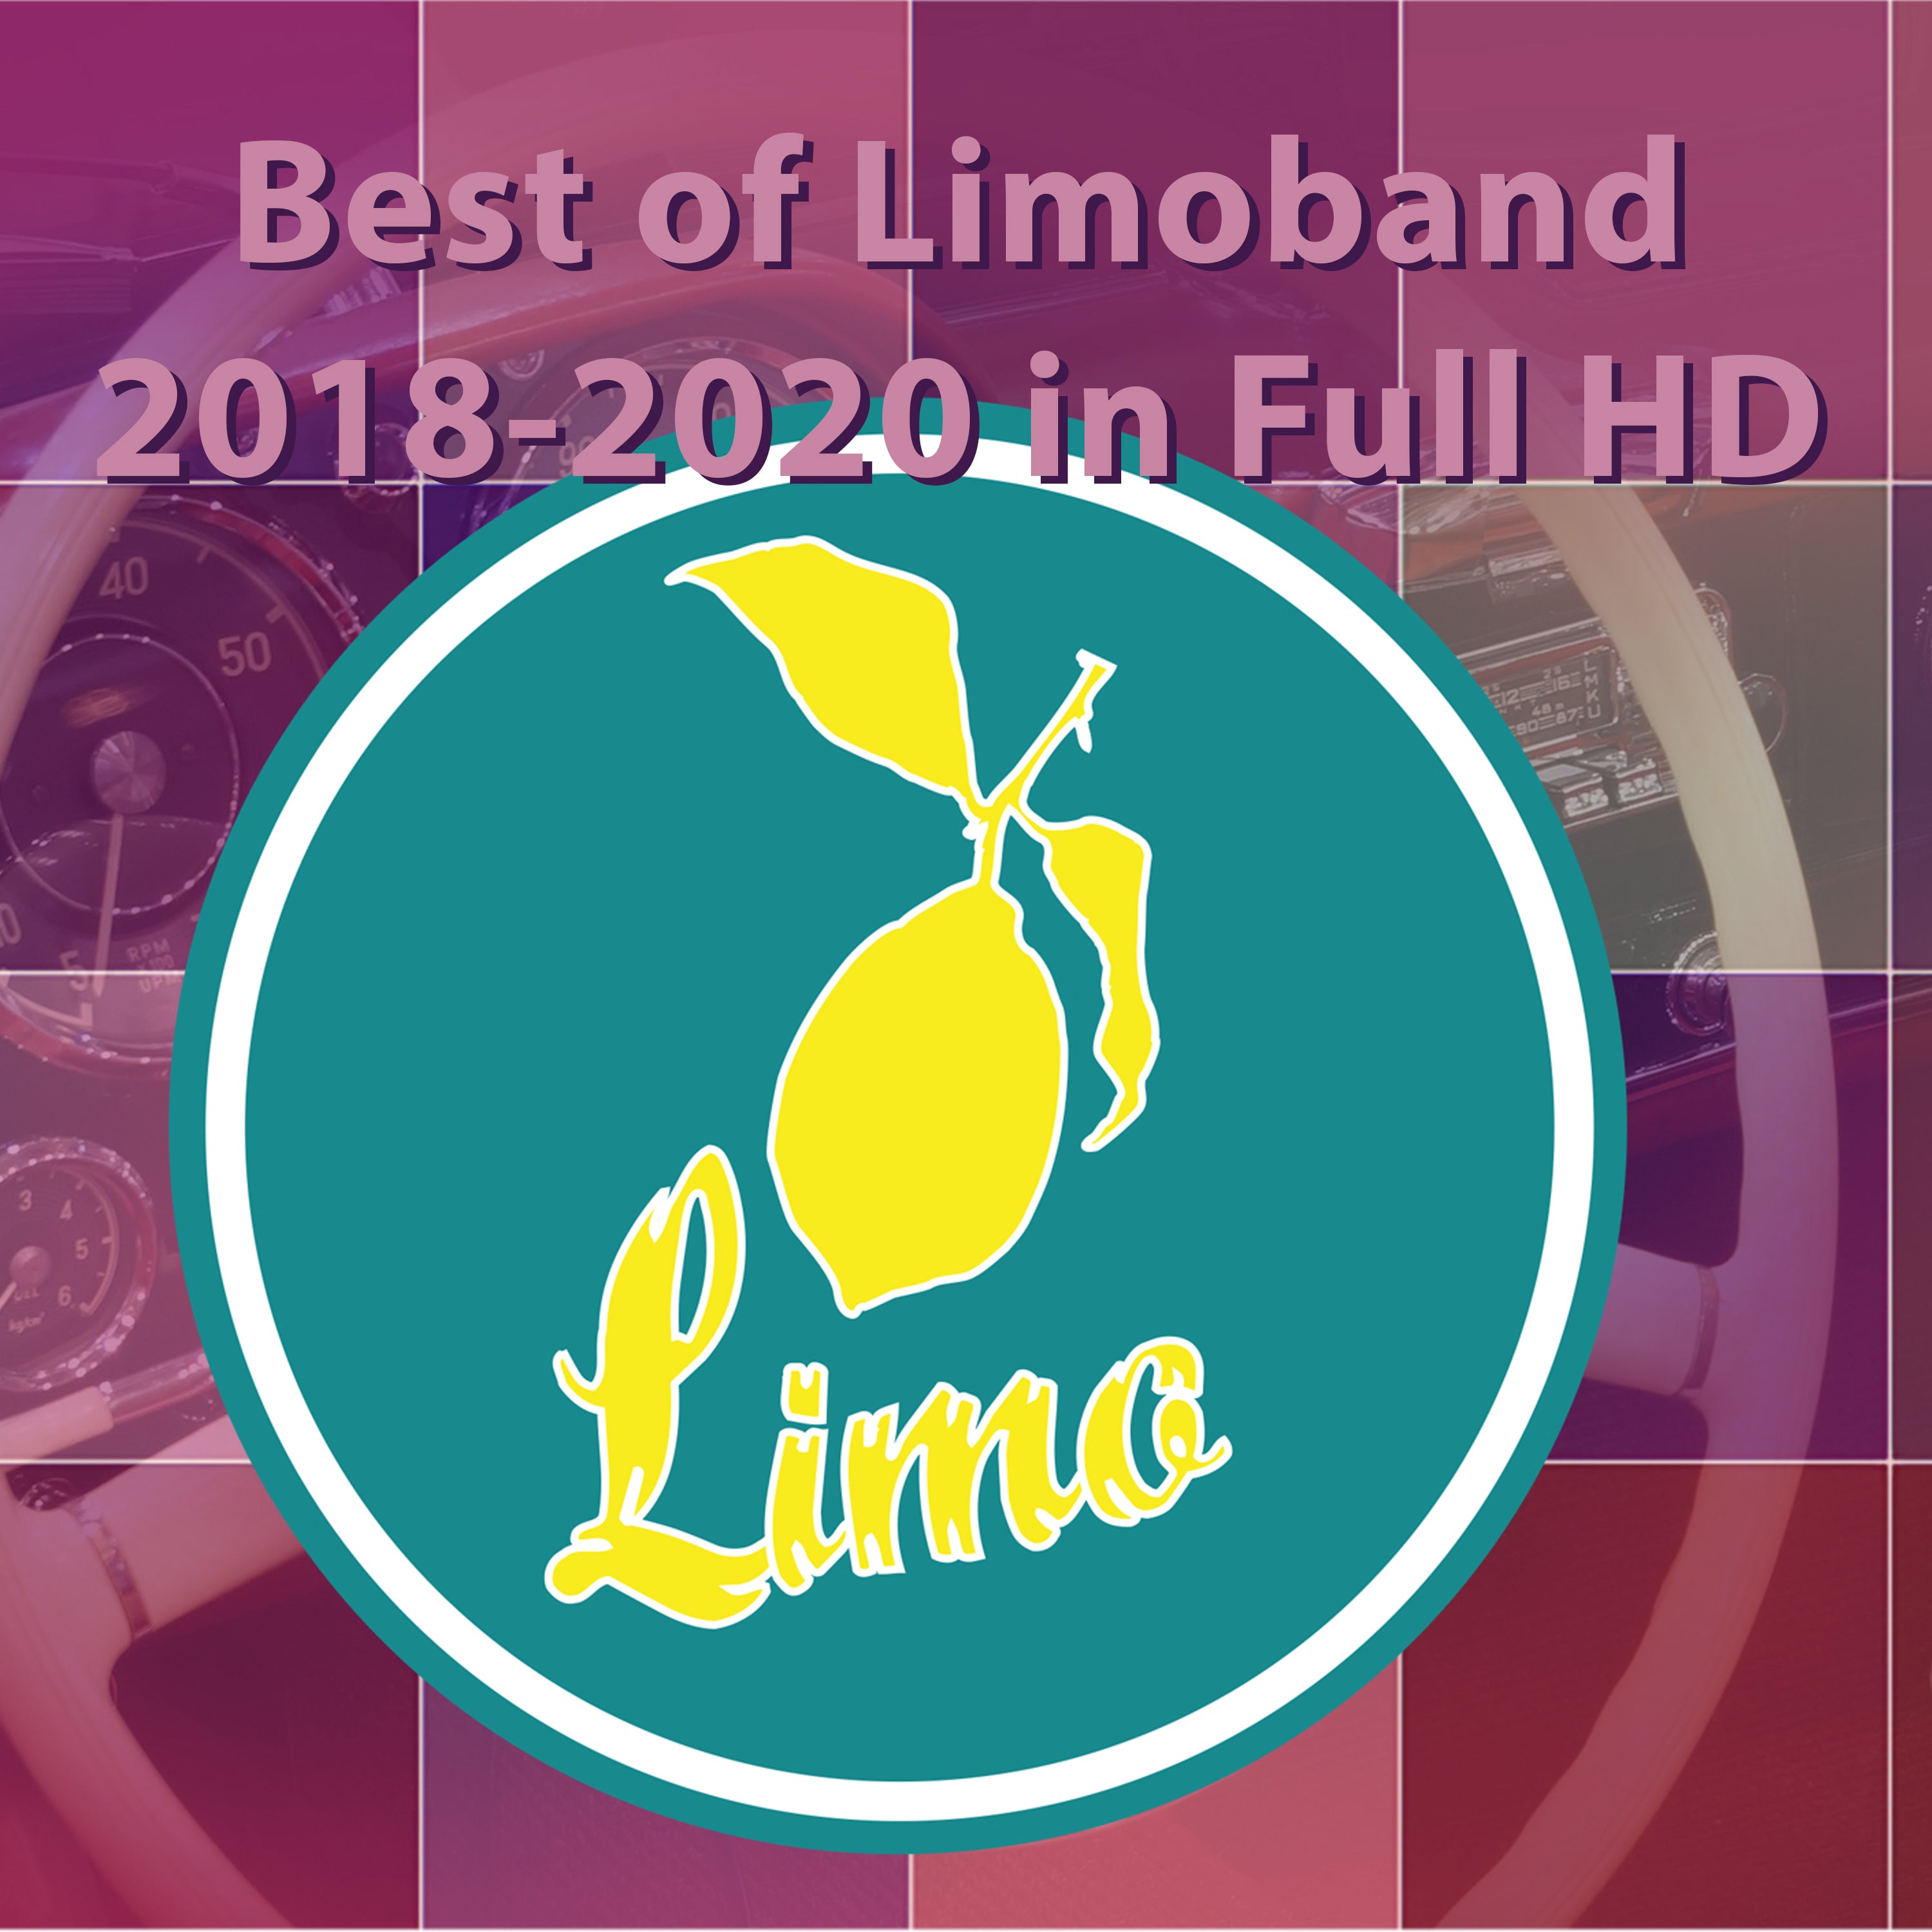 Best of Limoband 2018 - 2020 in Full HD 11 GB Musik über 2 Stunden Material mit exclusiven Band Fotos und mp3s von allen Songs - ralfchristophkaiser.com Musik und Noten